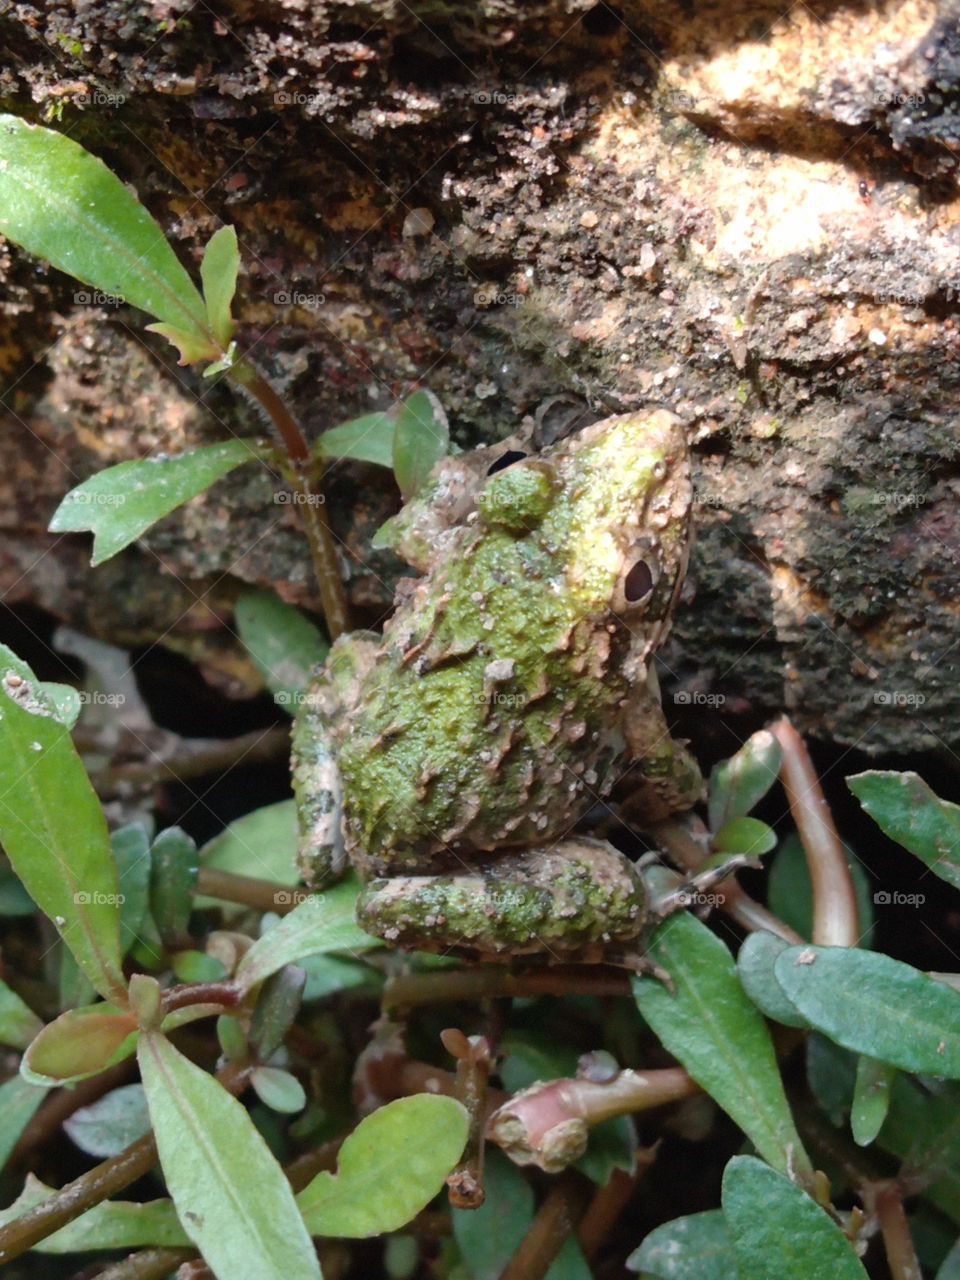 the hidden frog